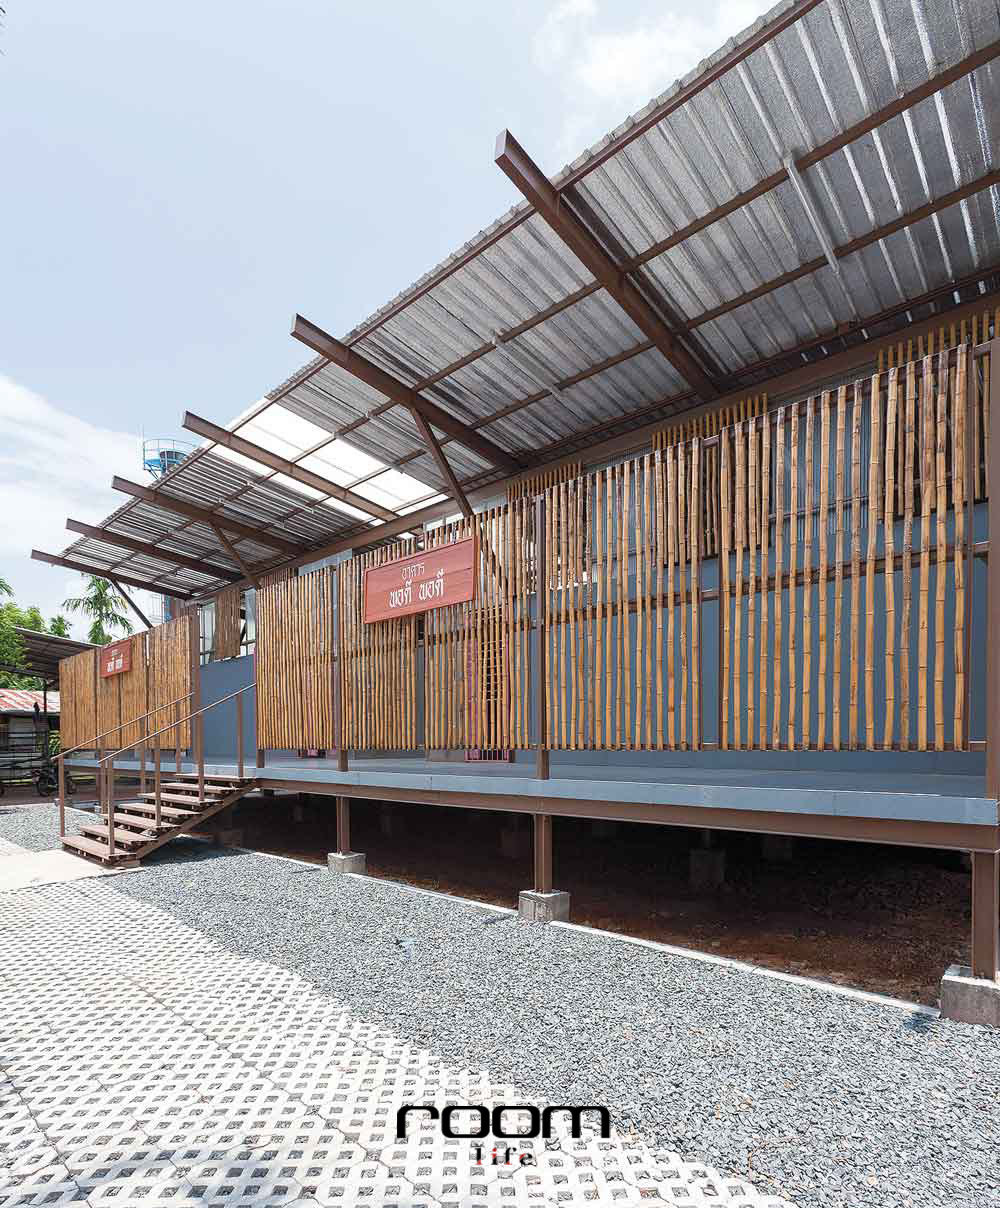 โรงเรียนบ้านหนองบัว ห้องเรียนพอดีพอดี จาก Junsekino Architect and Design